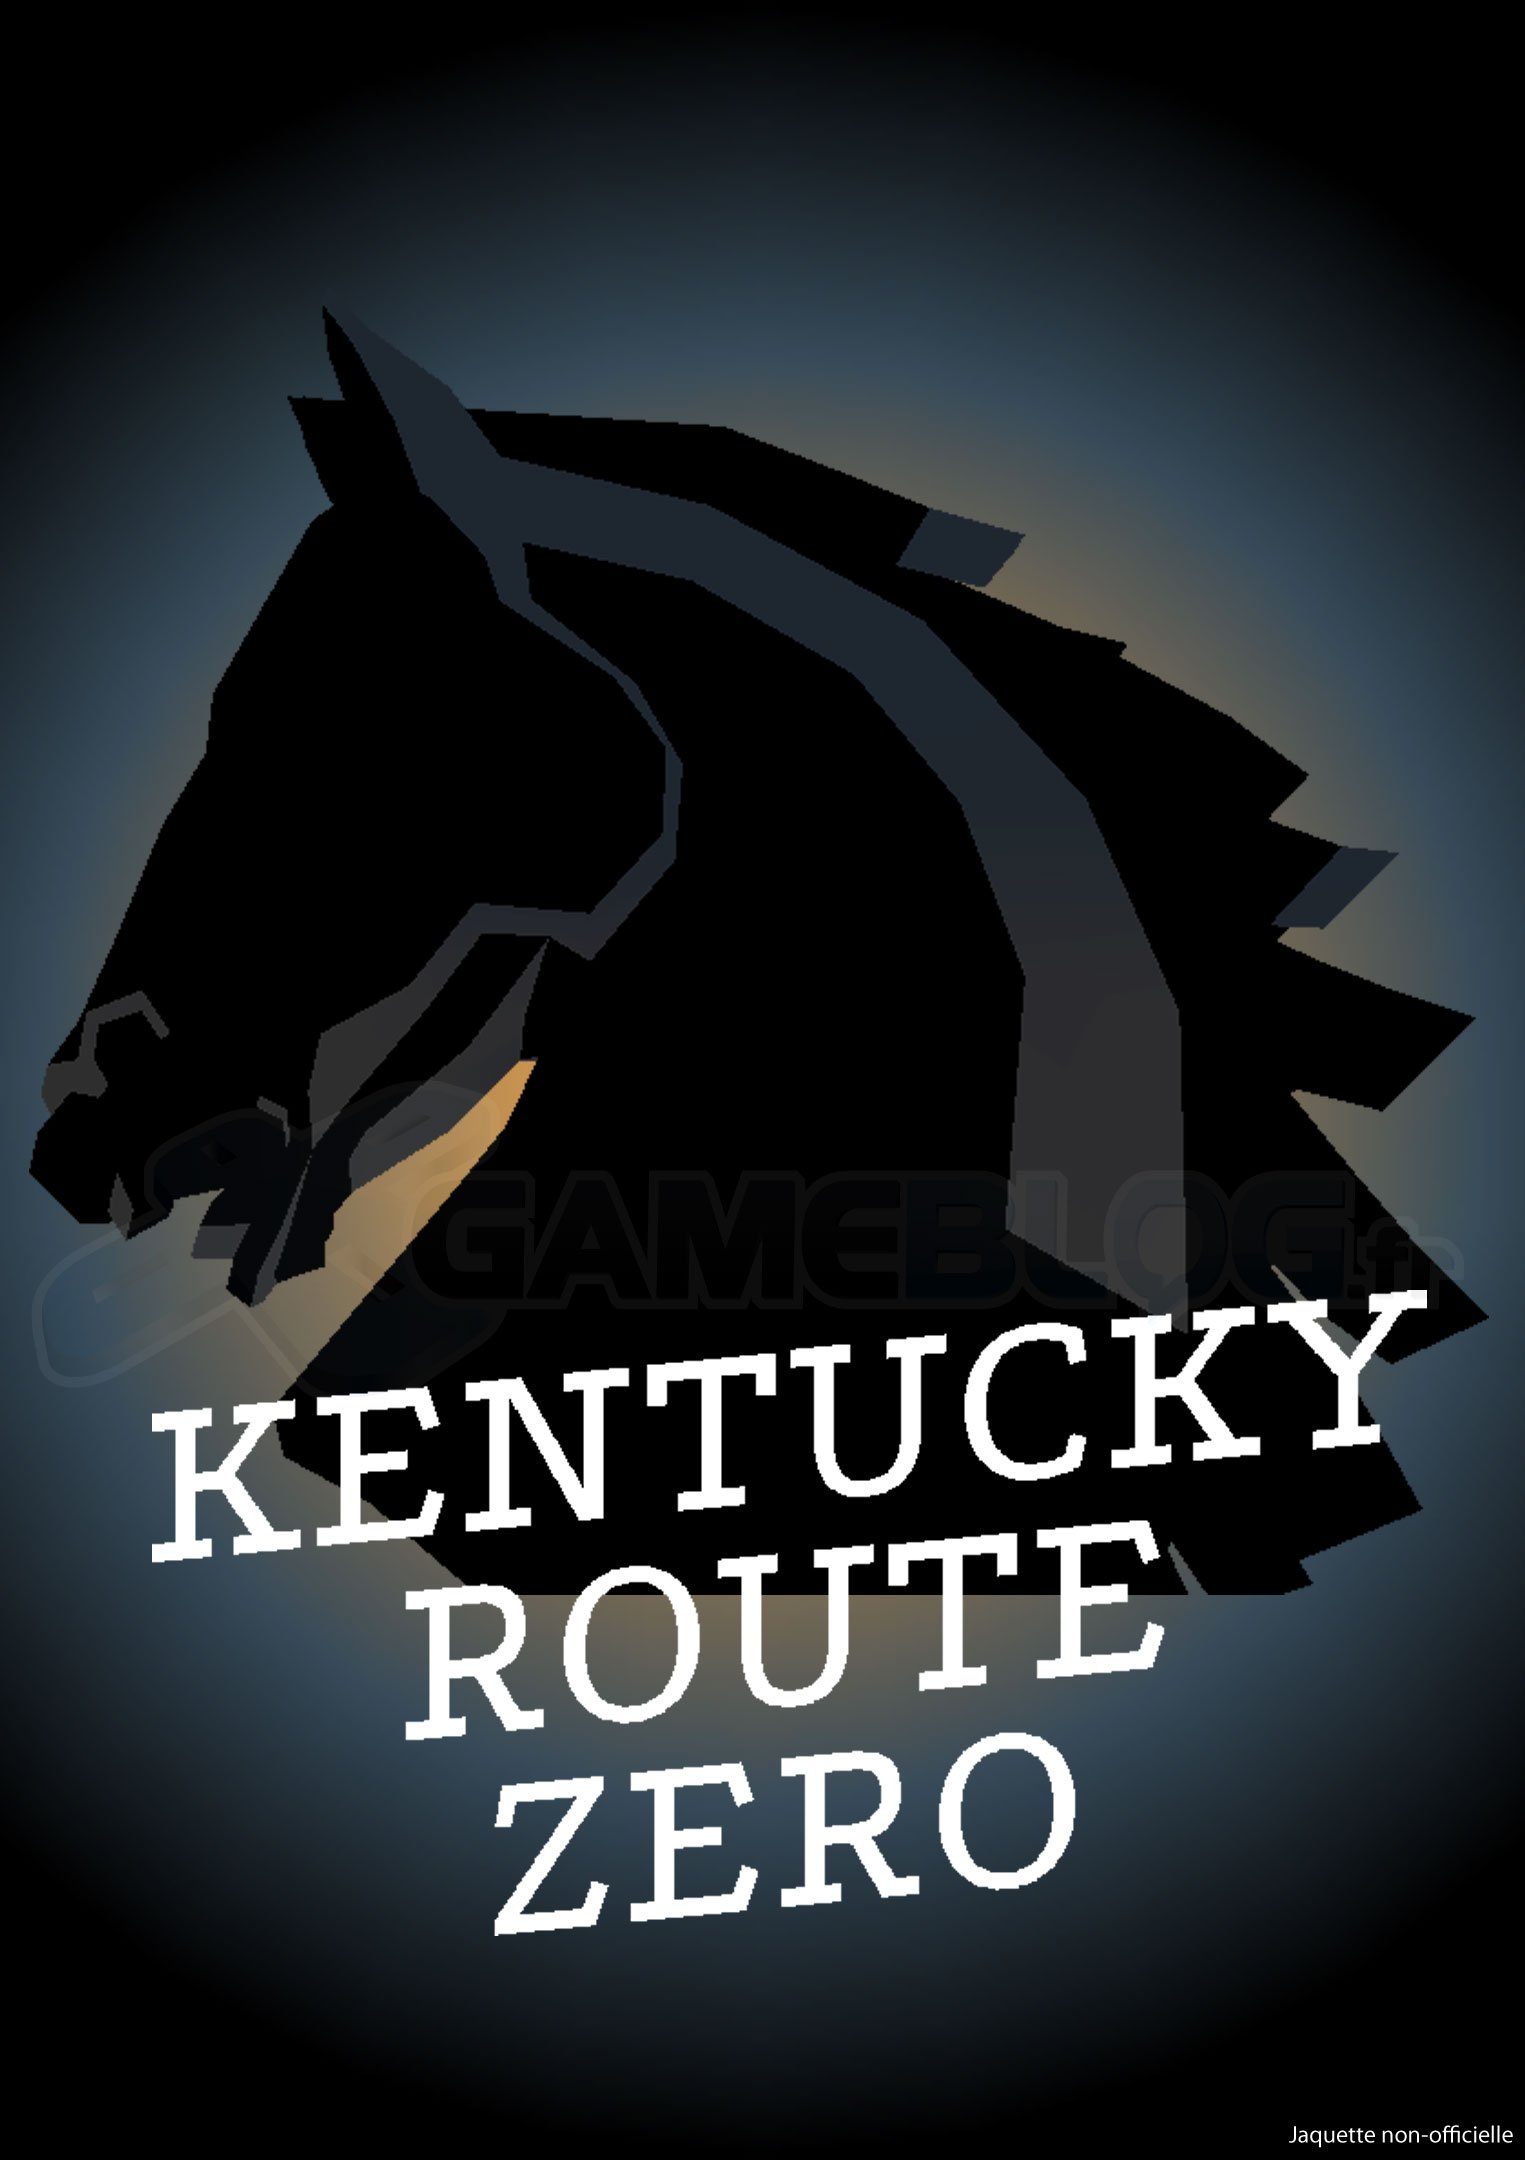 Kentucky Route Zero Act III